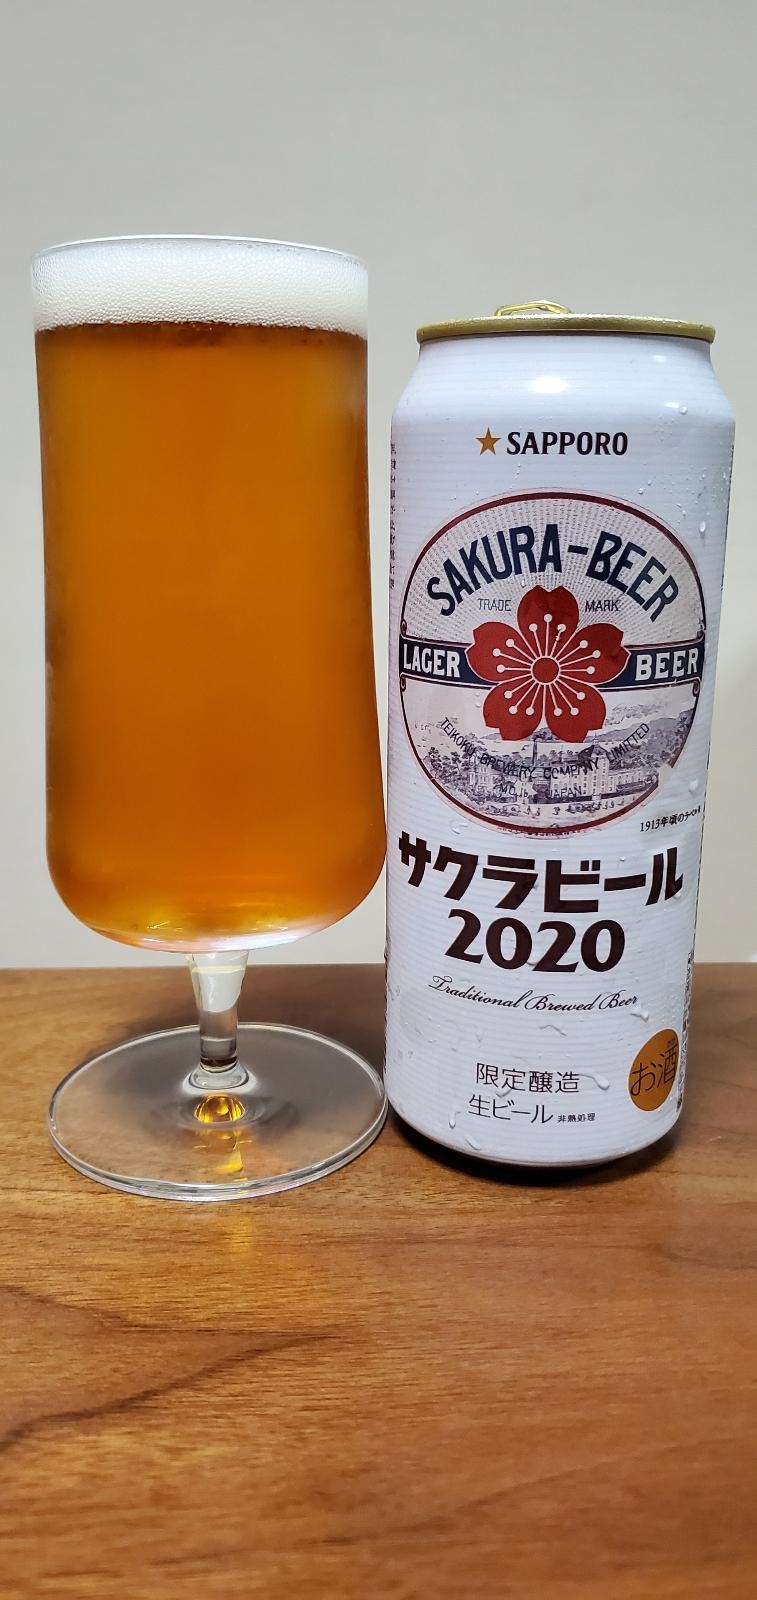 Sapporo Sakura Beer (2020)